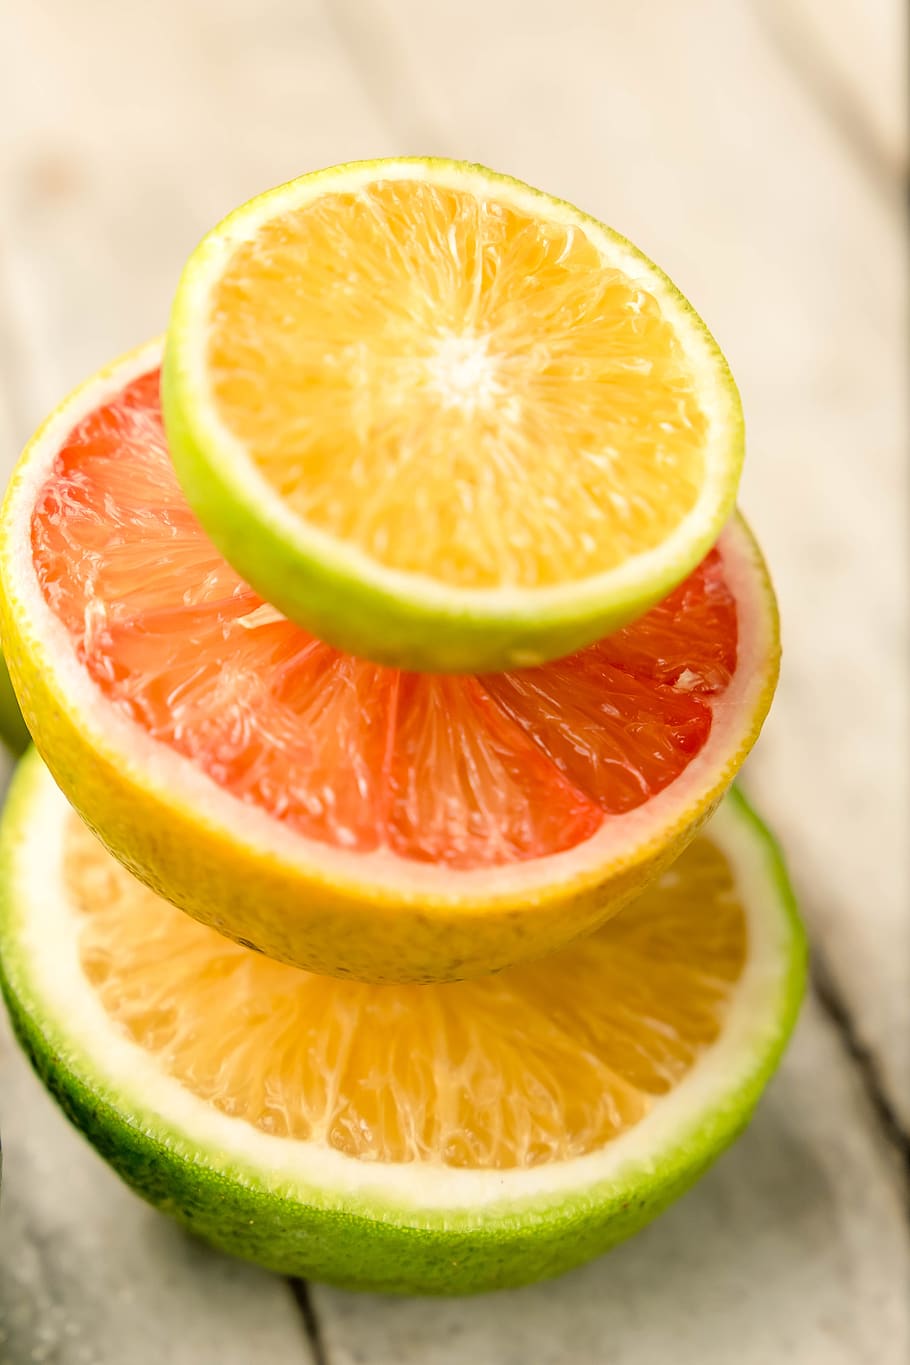 orange, citrus, fruit, natural fruits, food, red orange, food graphy, slice, healthy eating, food and drink